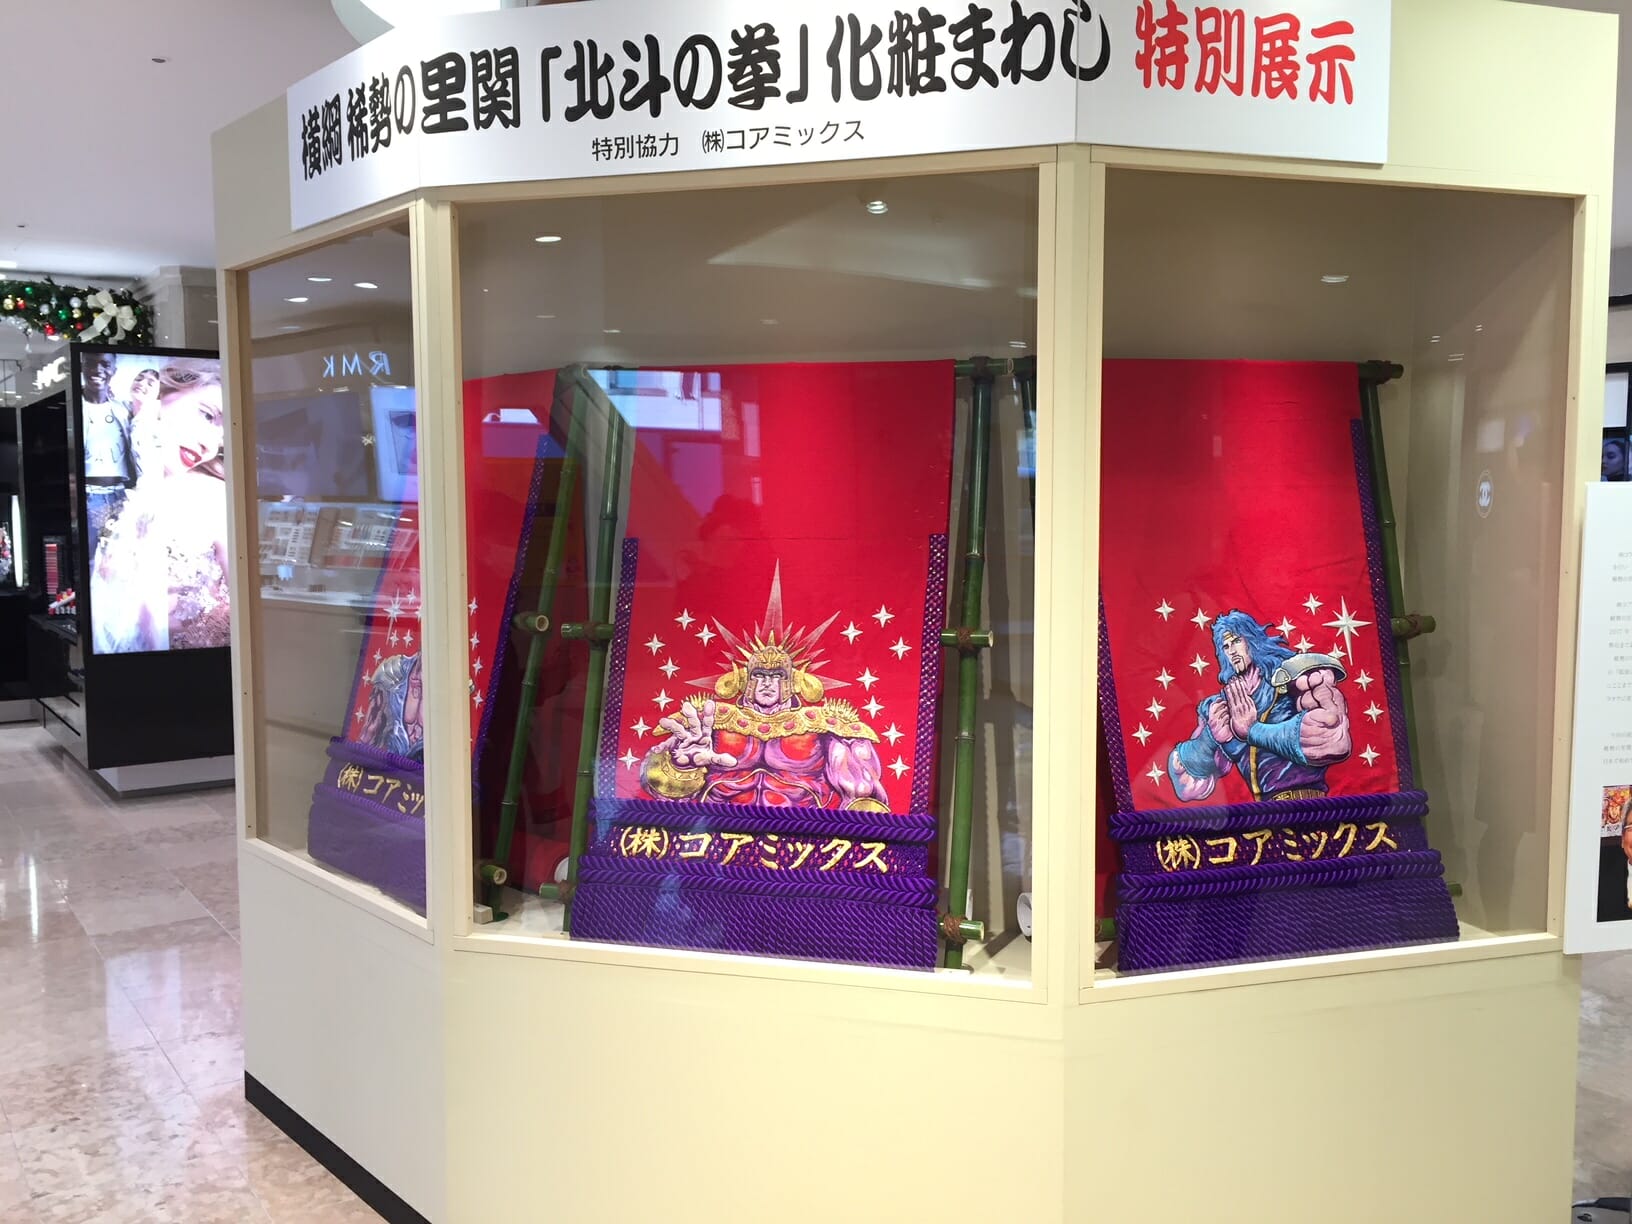 Bộ trang điểm "Nắm tay sao Bắc Đẩu" được trưng bày tại Cửa hàng bách hóa Tsuruya ở Kumamoto!